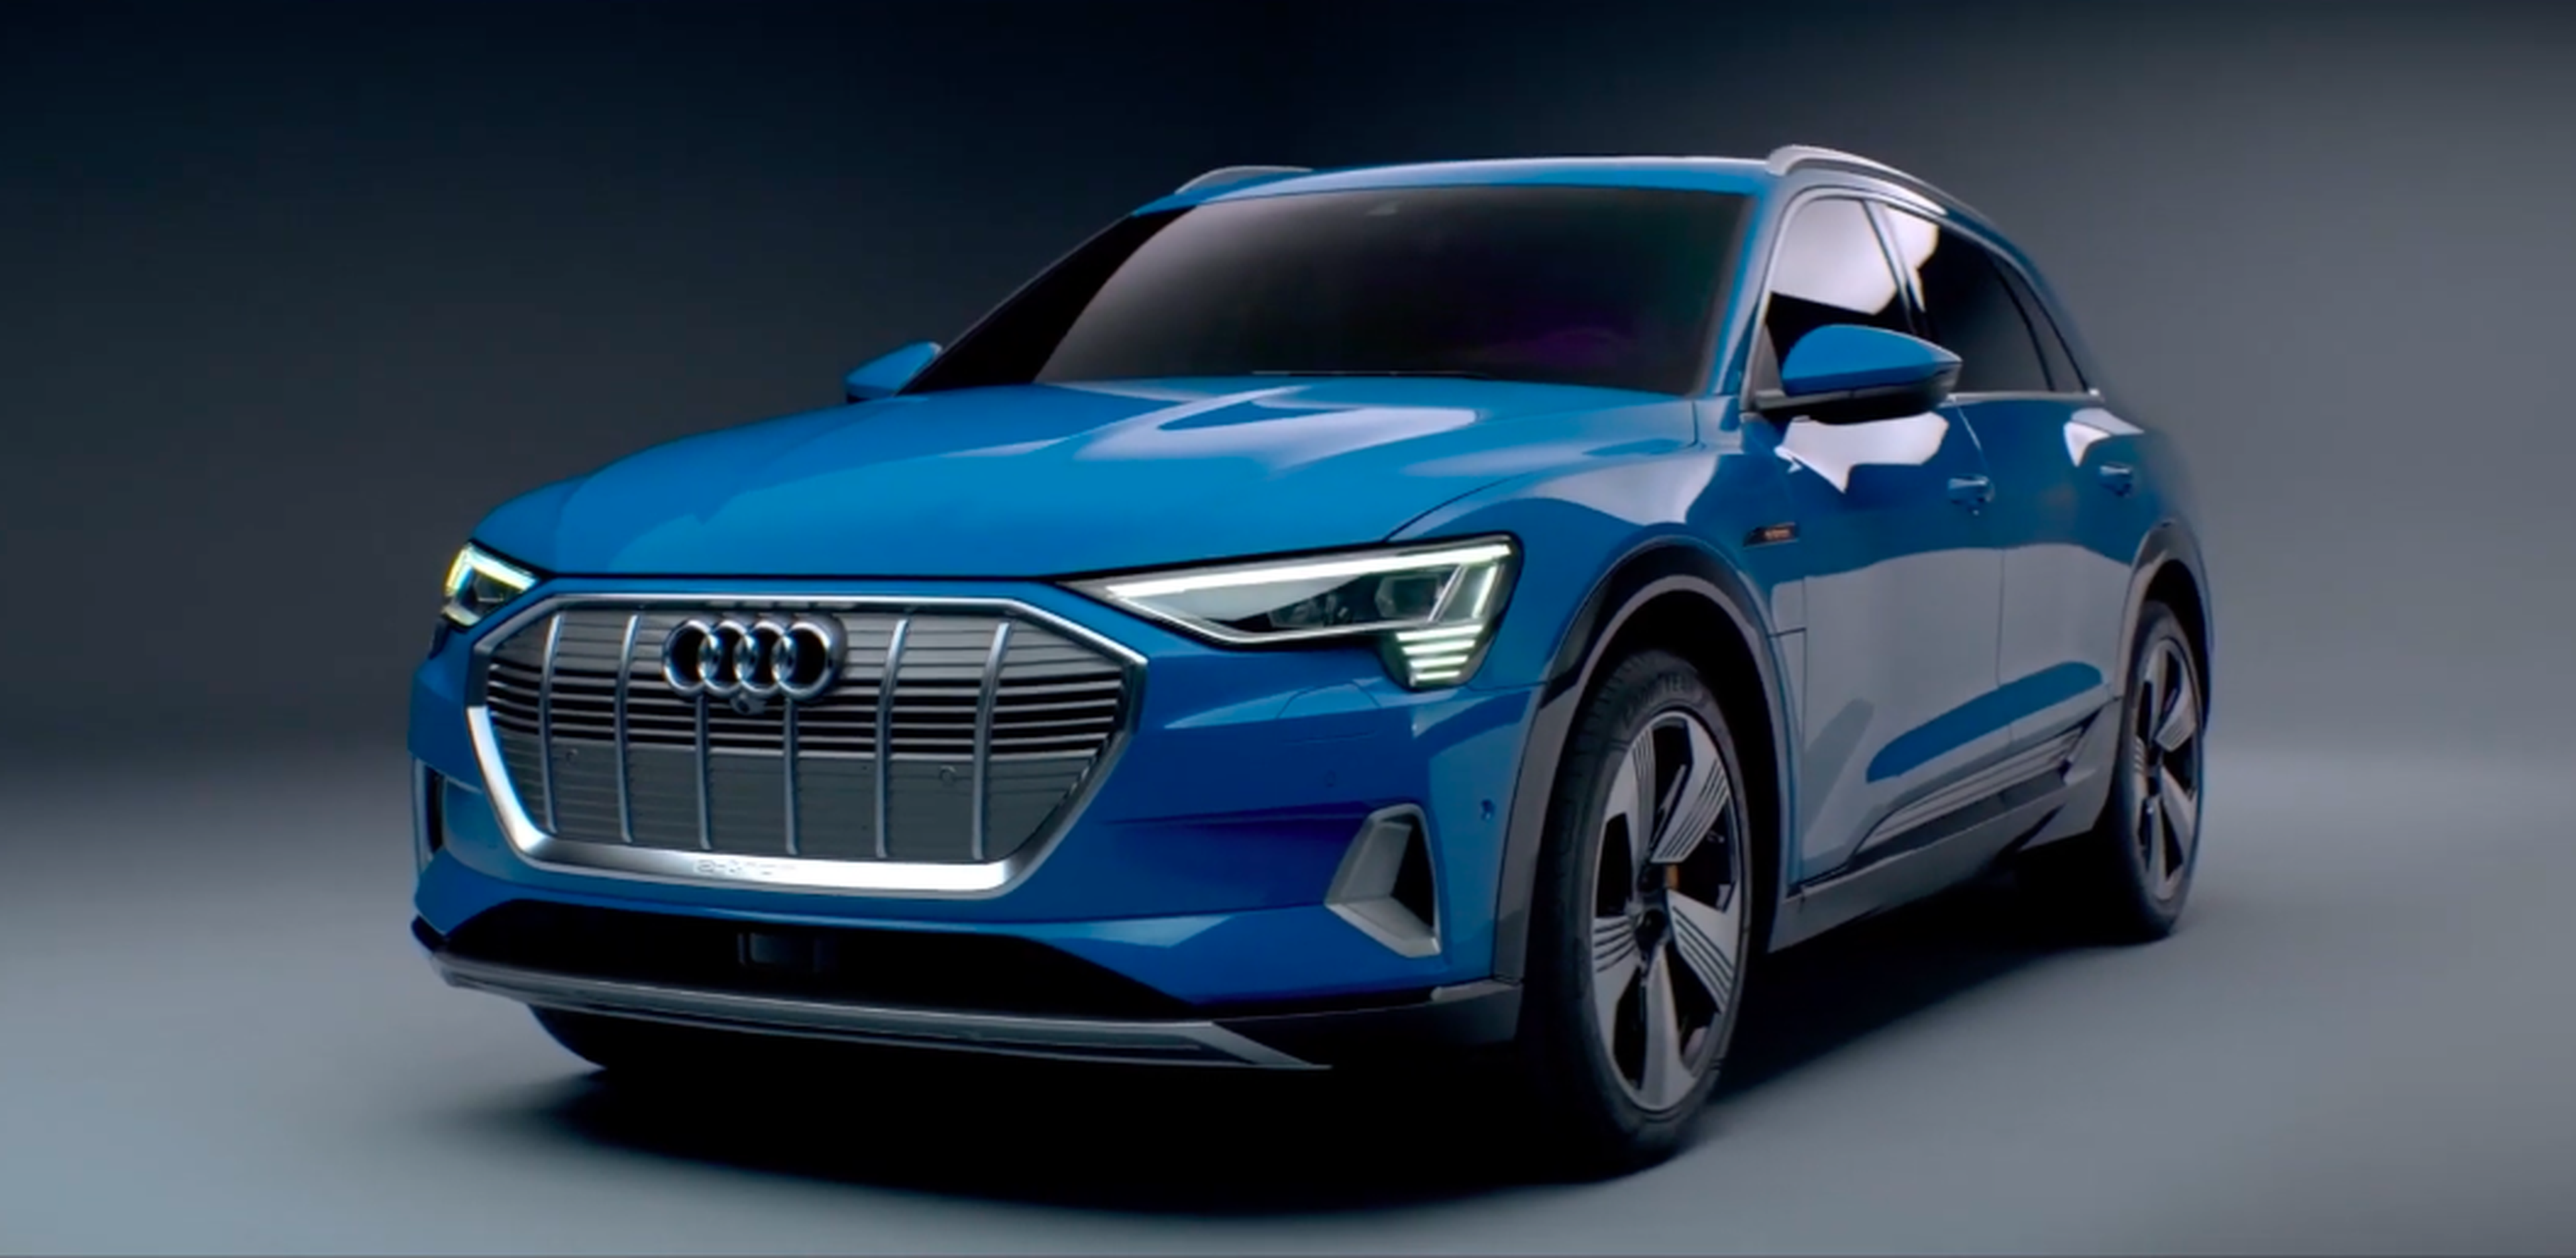 VÍDEO: Audi e-tron 2019, analizamos su exterior al milímetro, ¿te gusta?